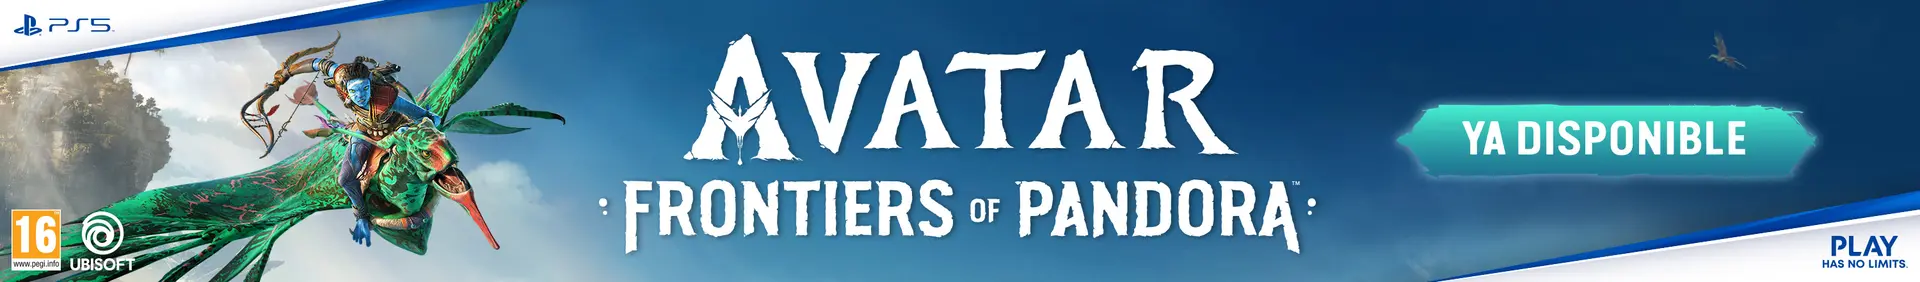 Avatar: Fronteras de Pandora